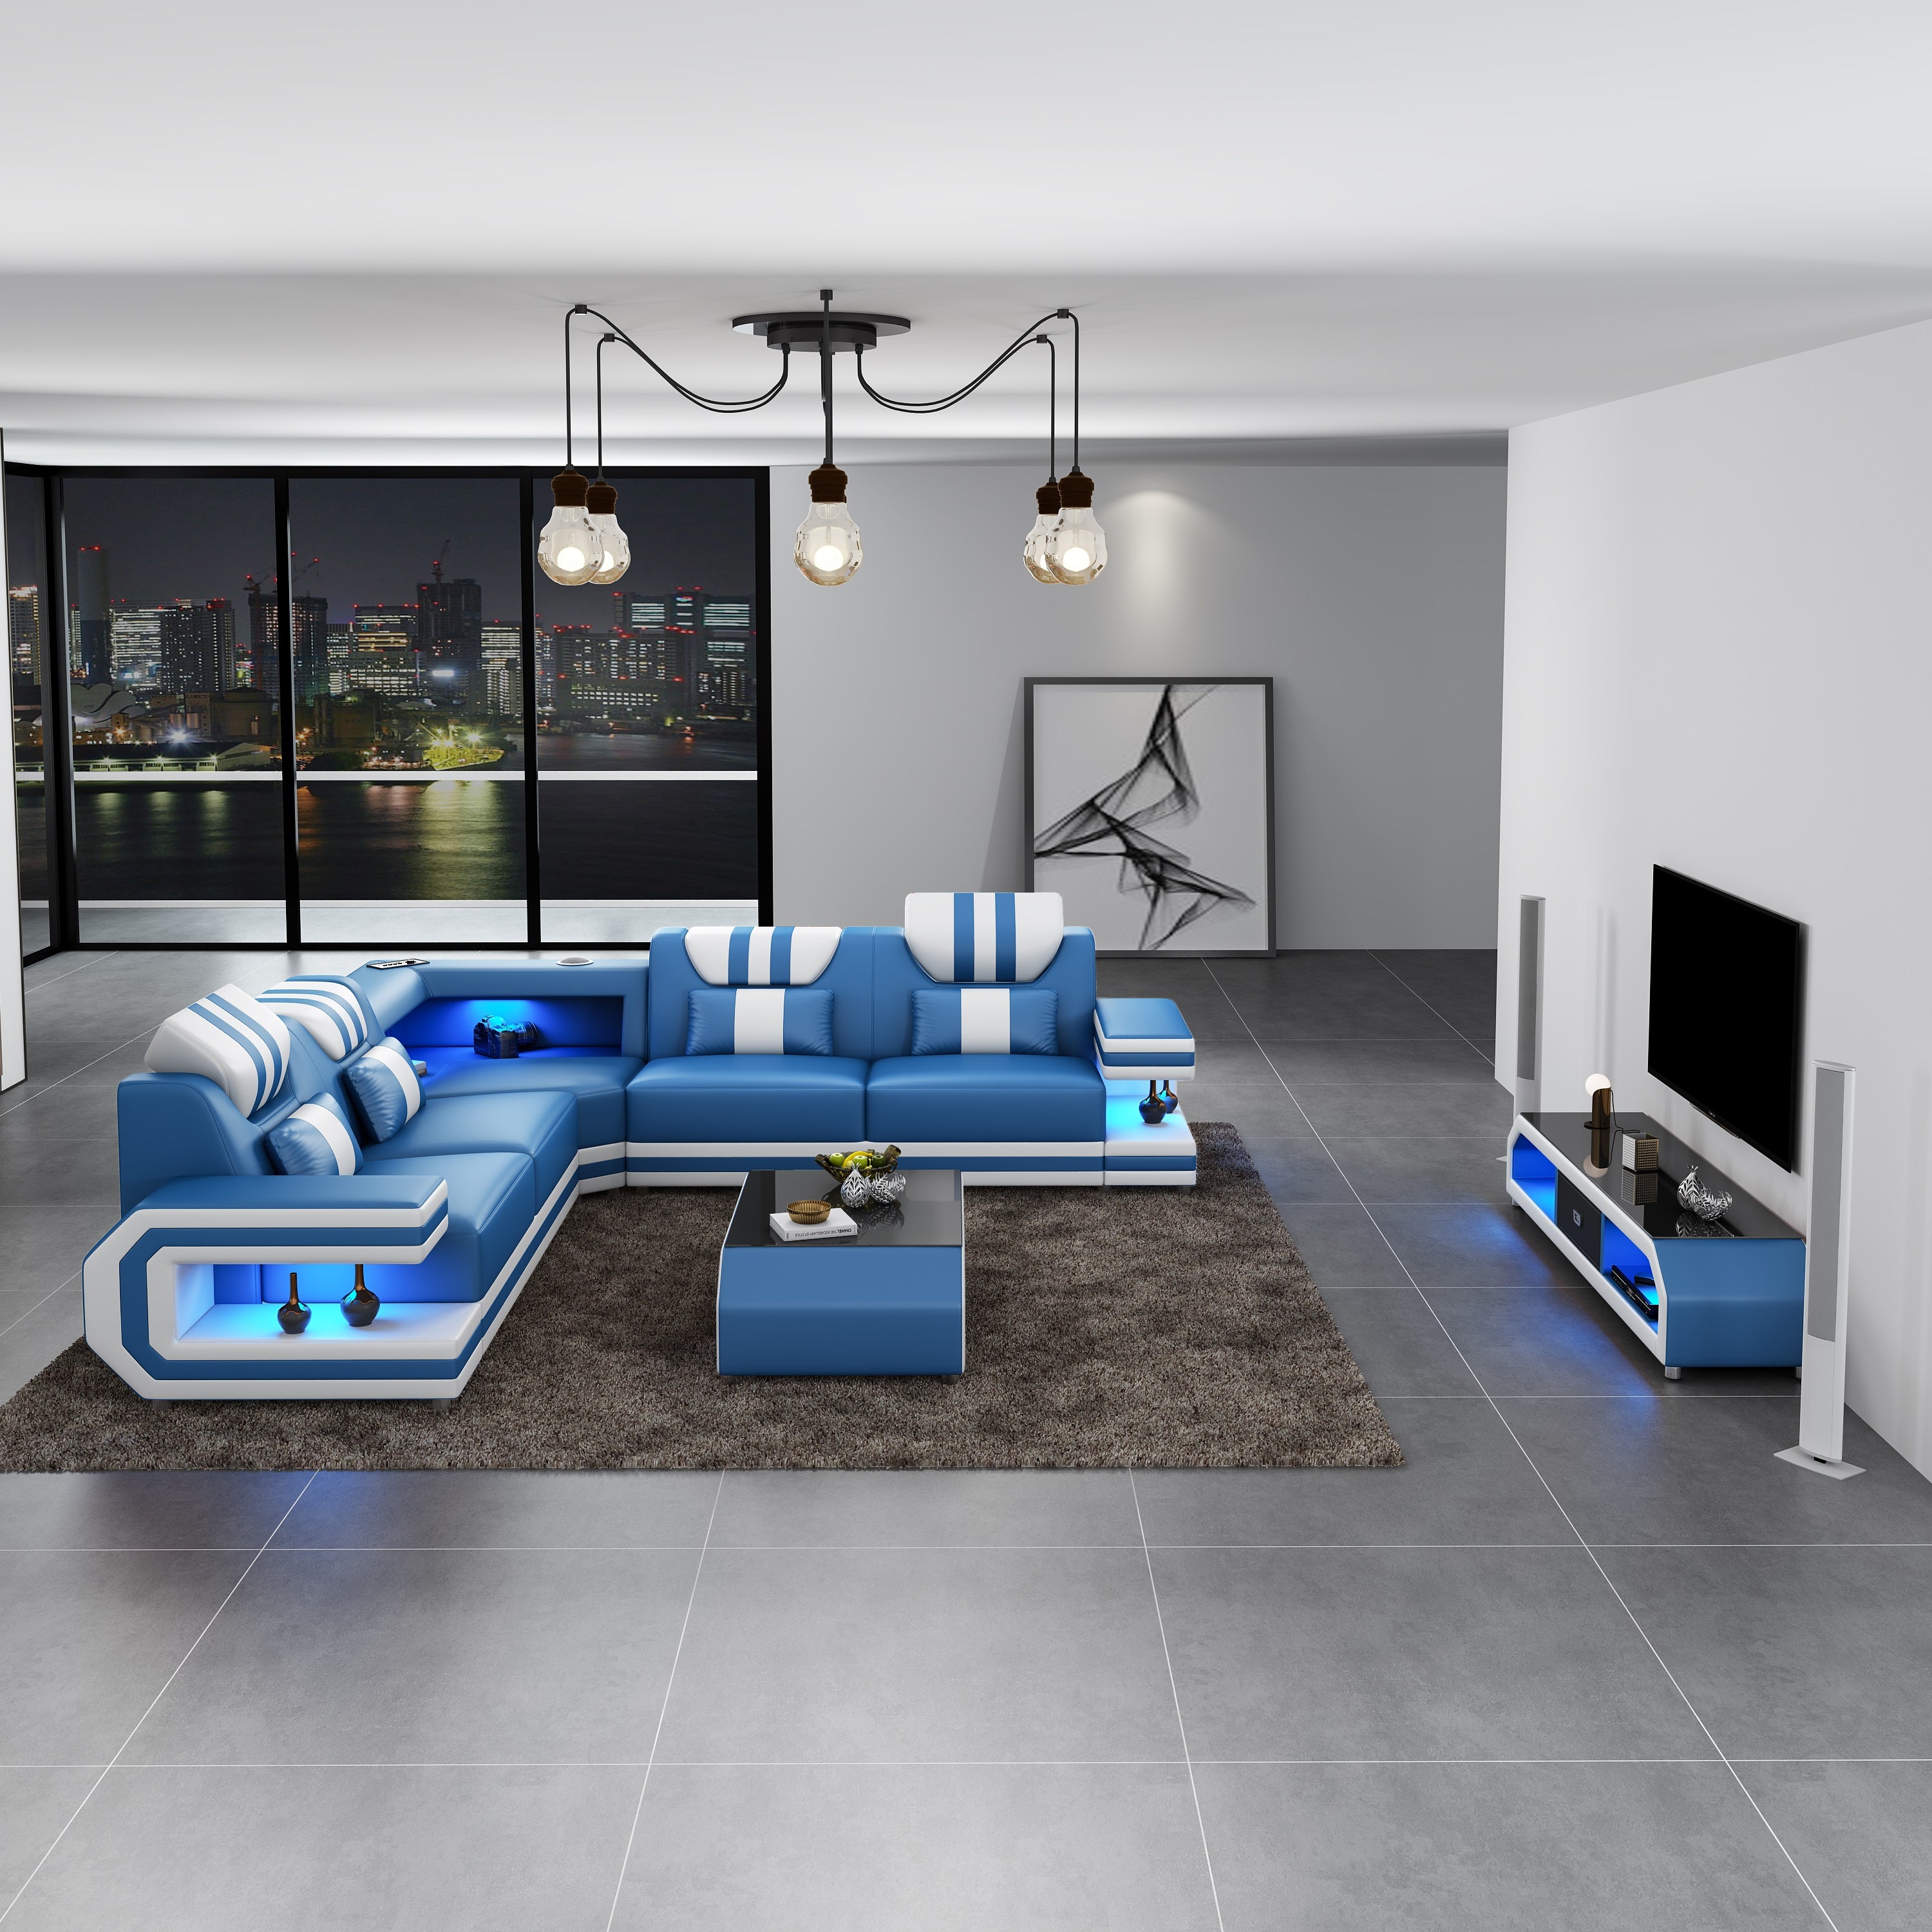 European Furniture - Lightsaber LED Sectional Blue White Italian Leather - LED-87772-BLUW - New Star Living